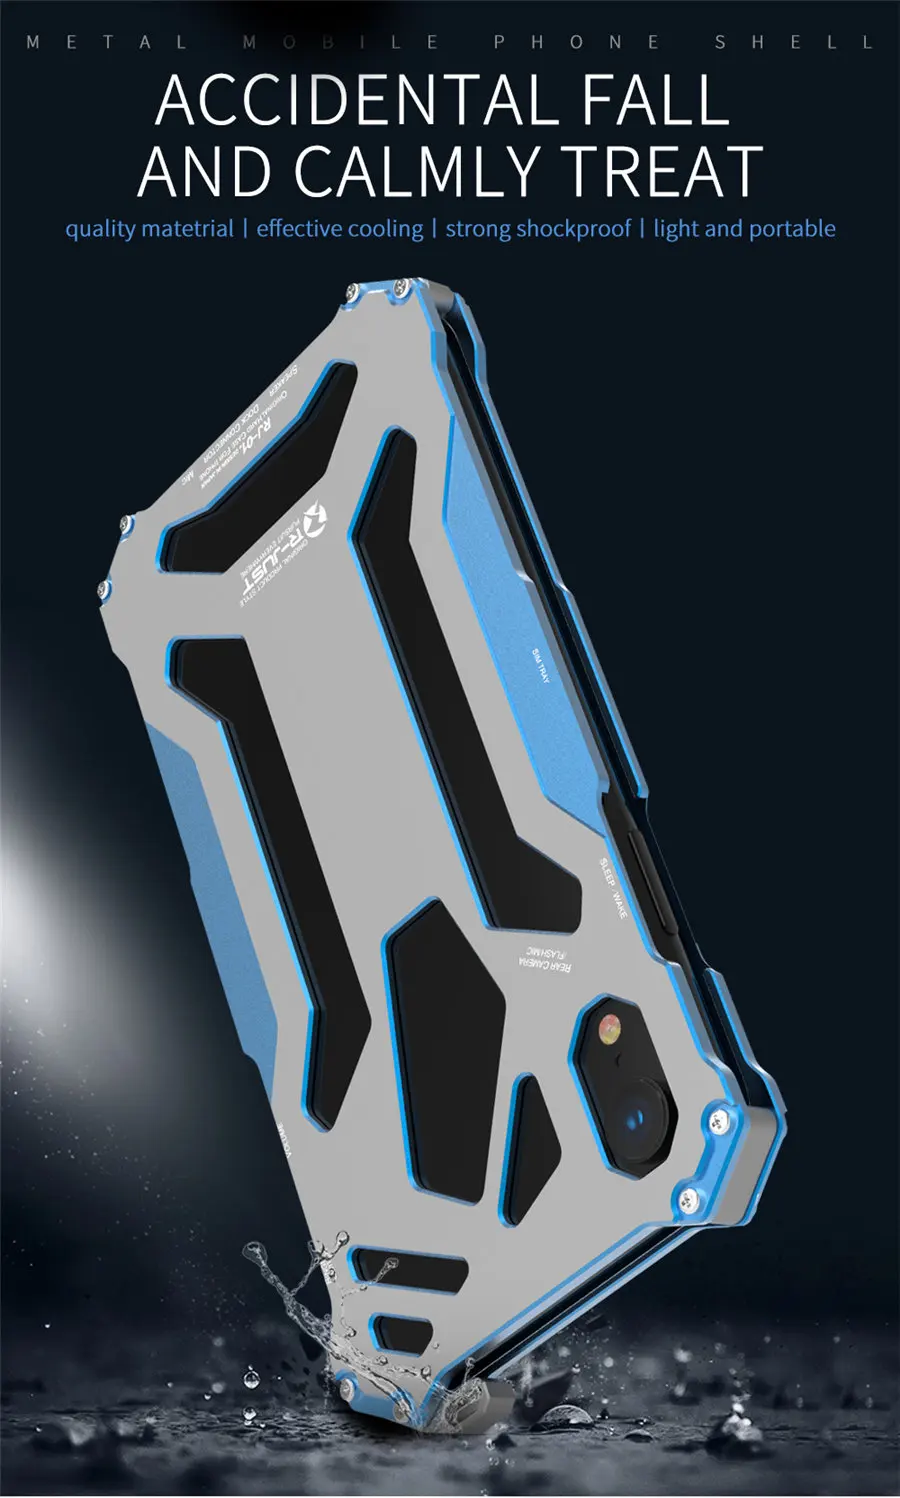 R-JUST Gundam металлический чехол алюминиевый чехол для iPhone Xs Броня противоударный чехол для телефона s для iPhone Xs/X/XR/Xs Max